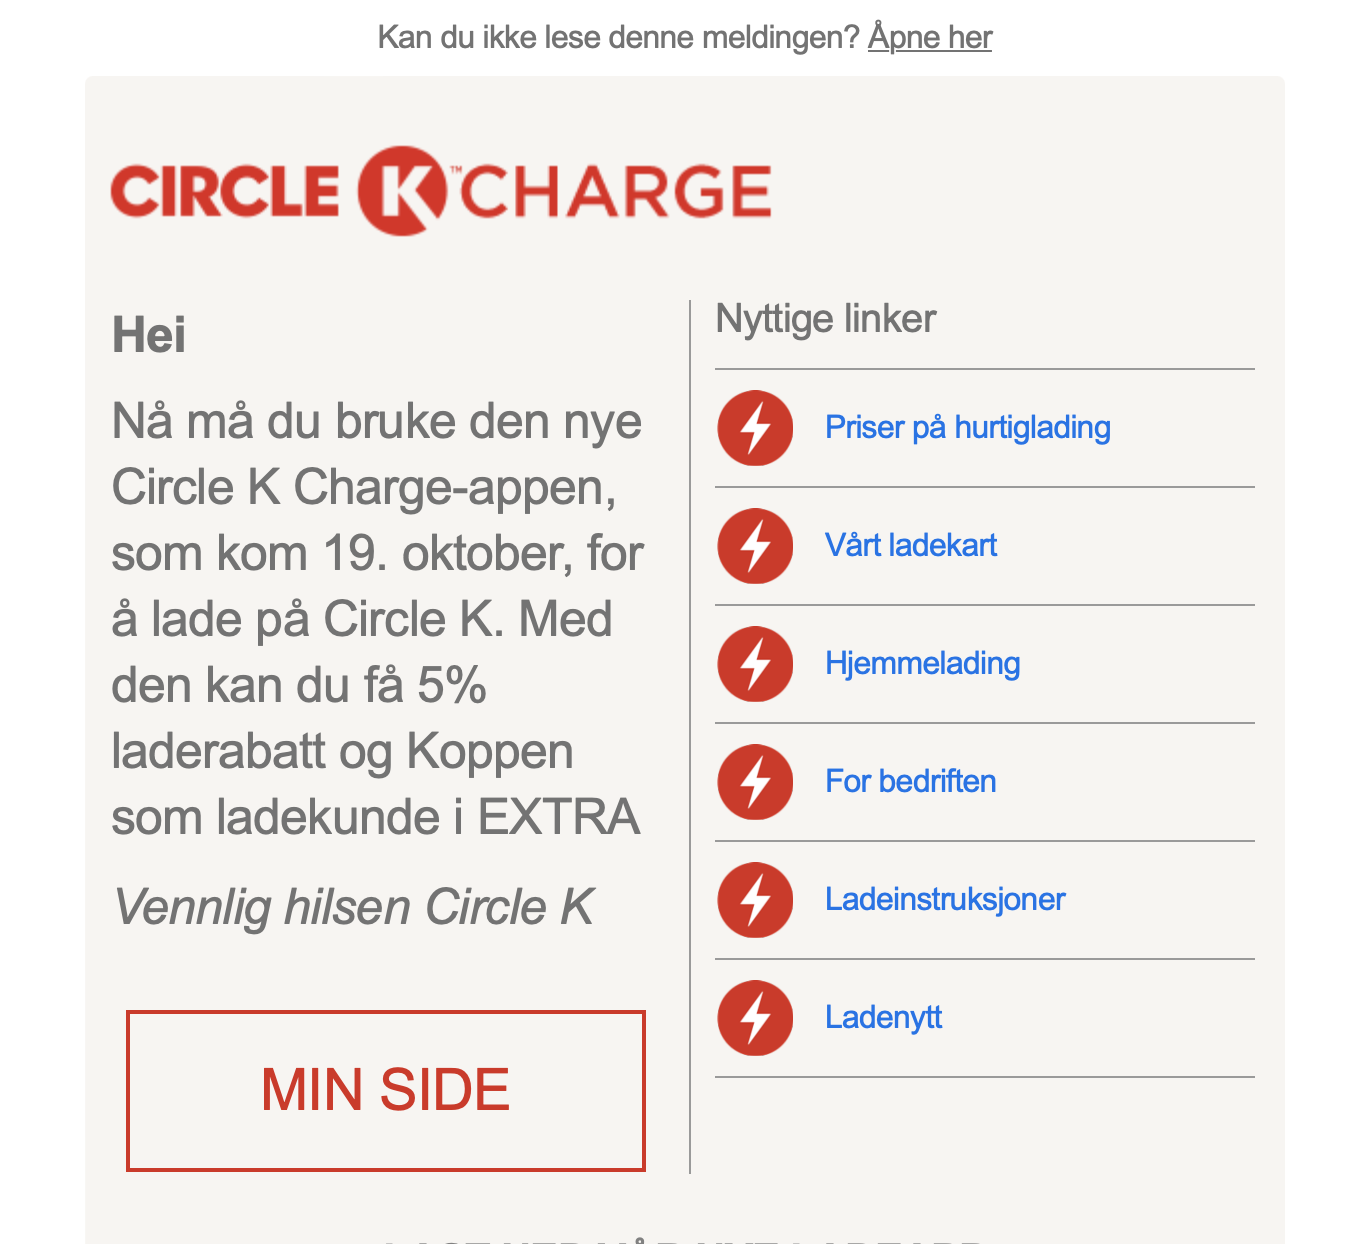 Porsche Taycan Norway: Charging at Circle K & New App Screenshot 2022-12-13 at 13.36.04